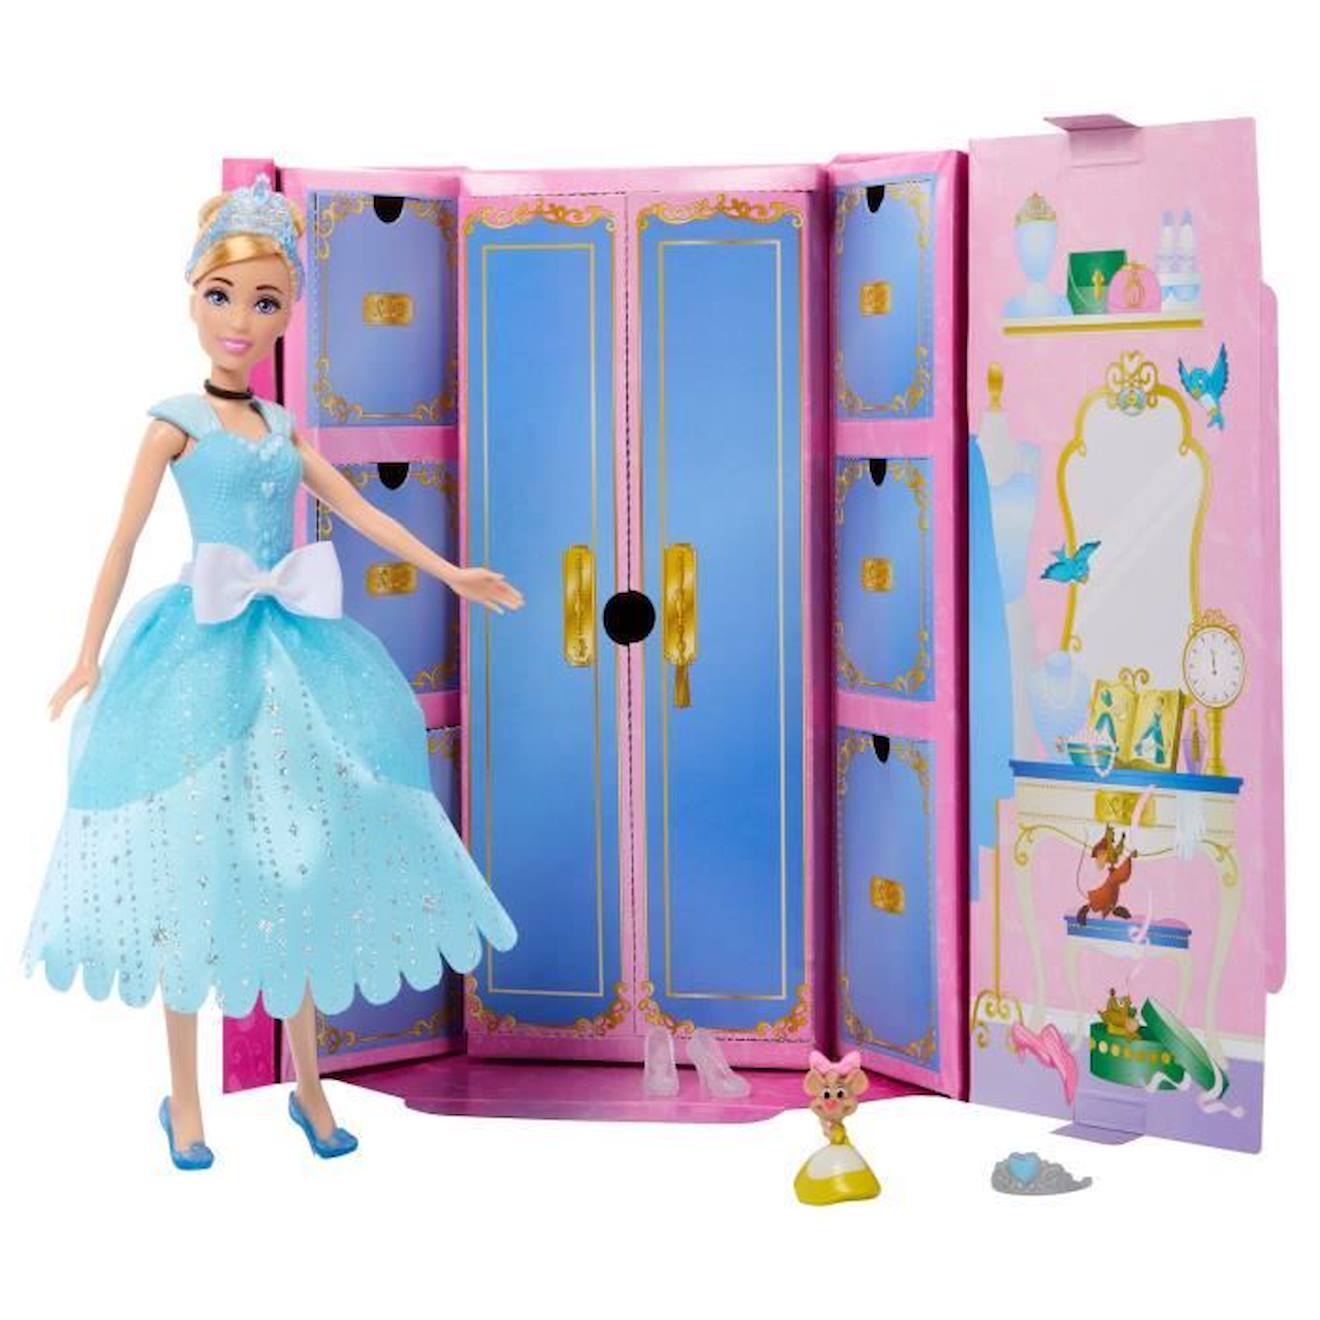 Cendrillon Surprises Royales - Mattel - Hmk53 - Poupee Mannequin Disney Bleu